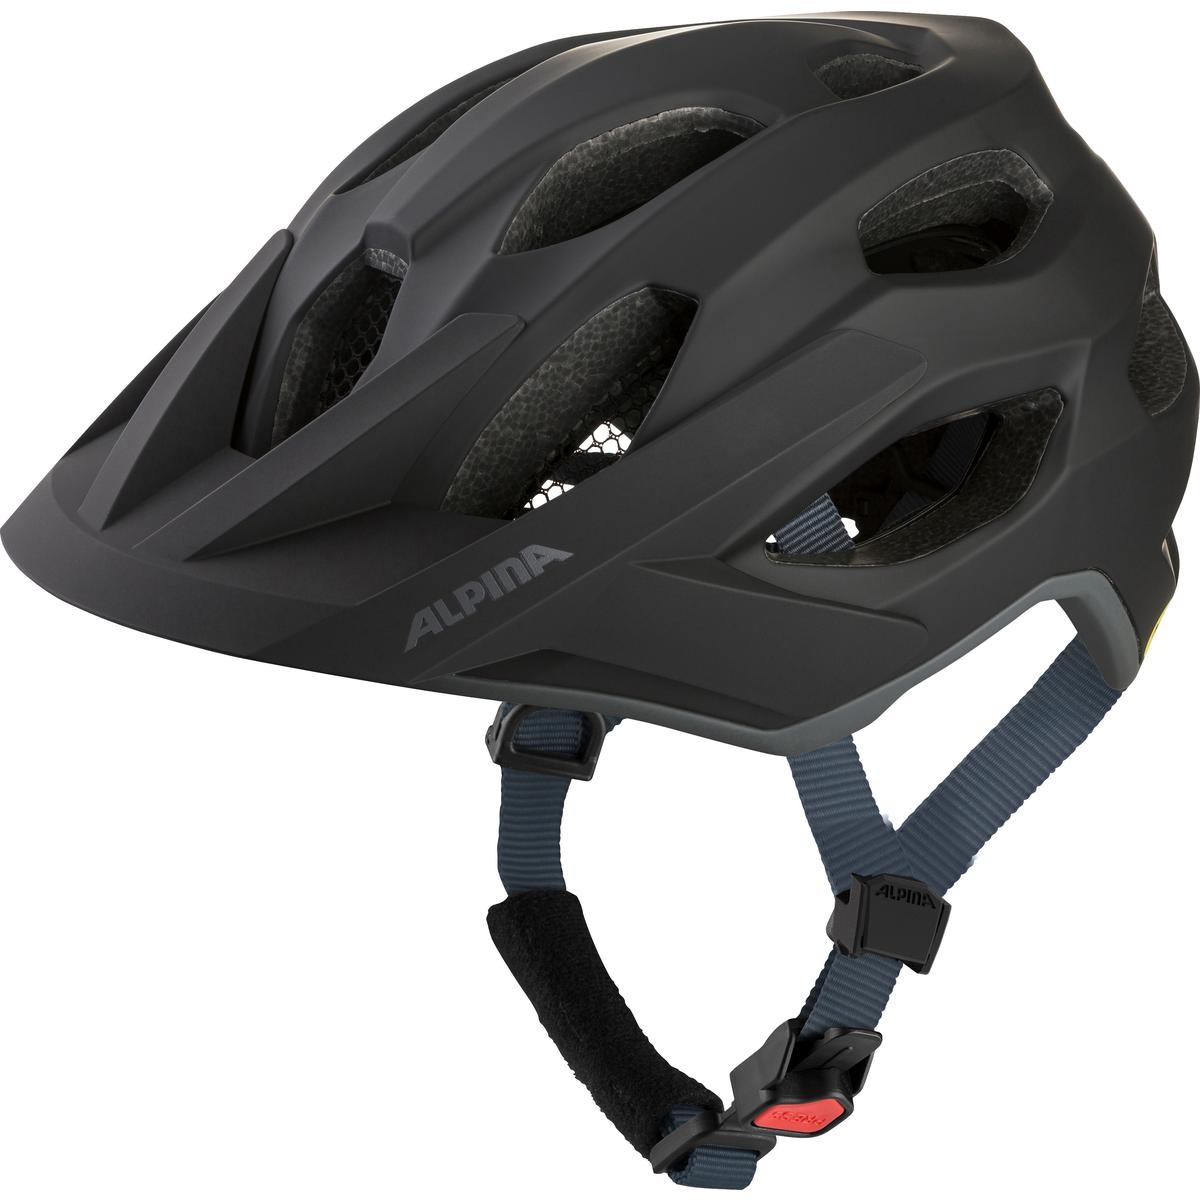 Produktbild von Alpina Apax MIPS Helm - schwarz matt